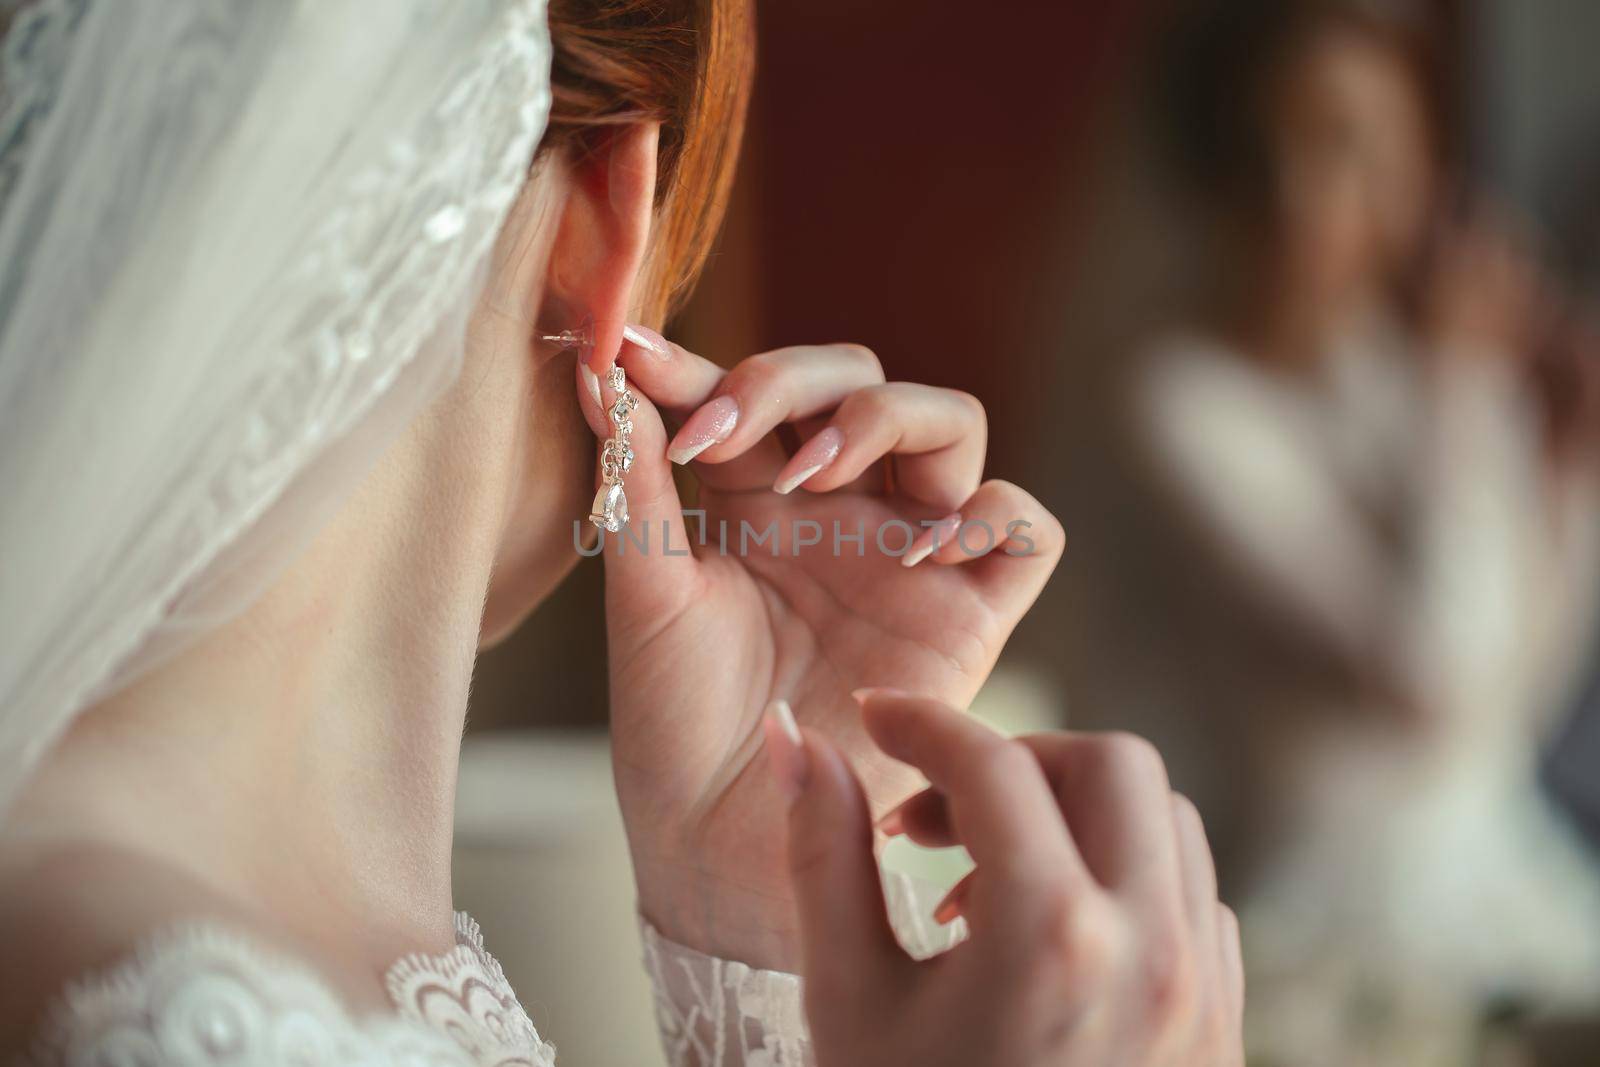 Wedding earrings on a woman's hand, she takes earrings, bride fees, morning bride, white dress, wearing earrings. by StudioPeace